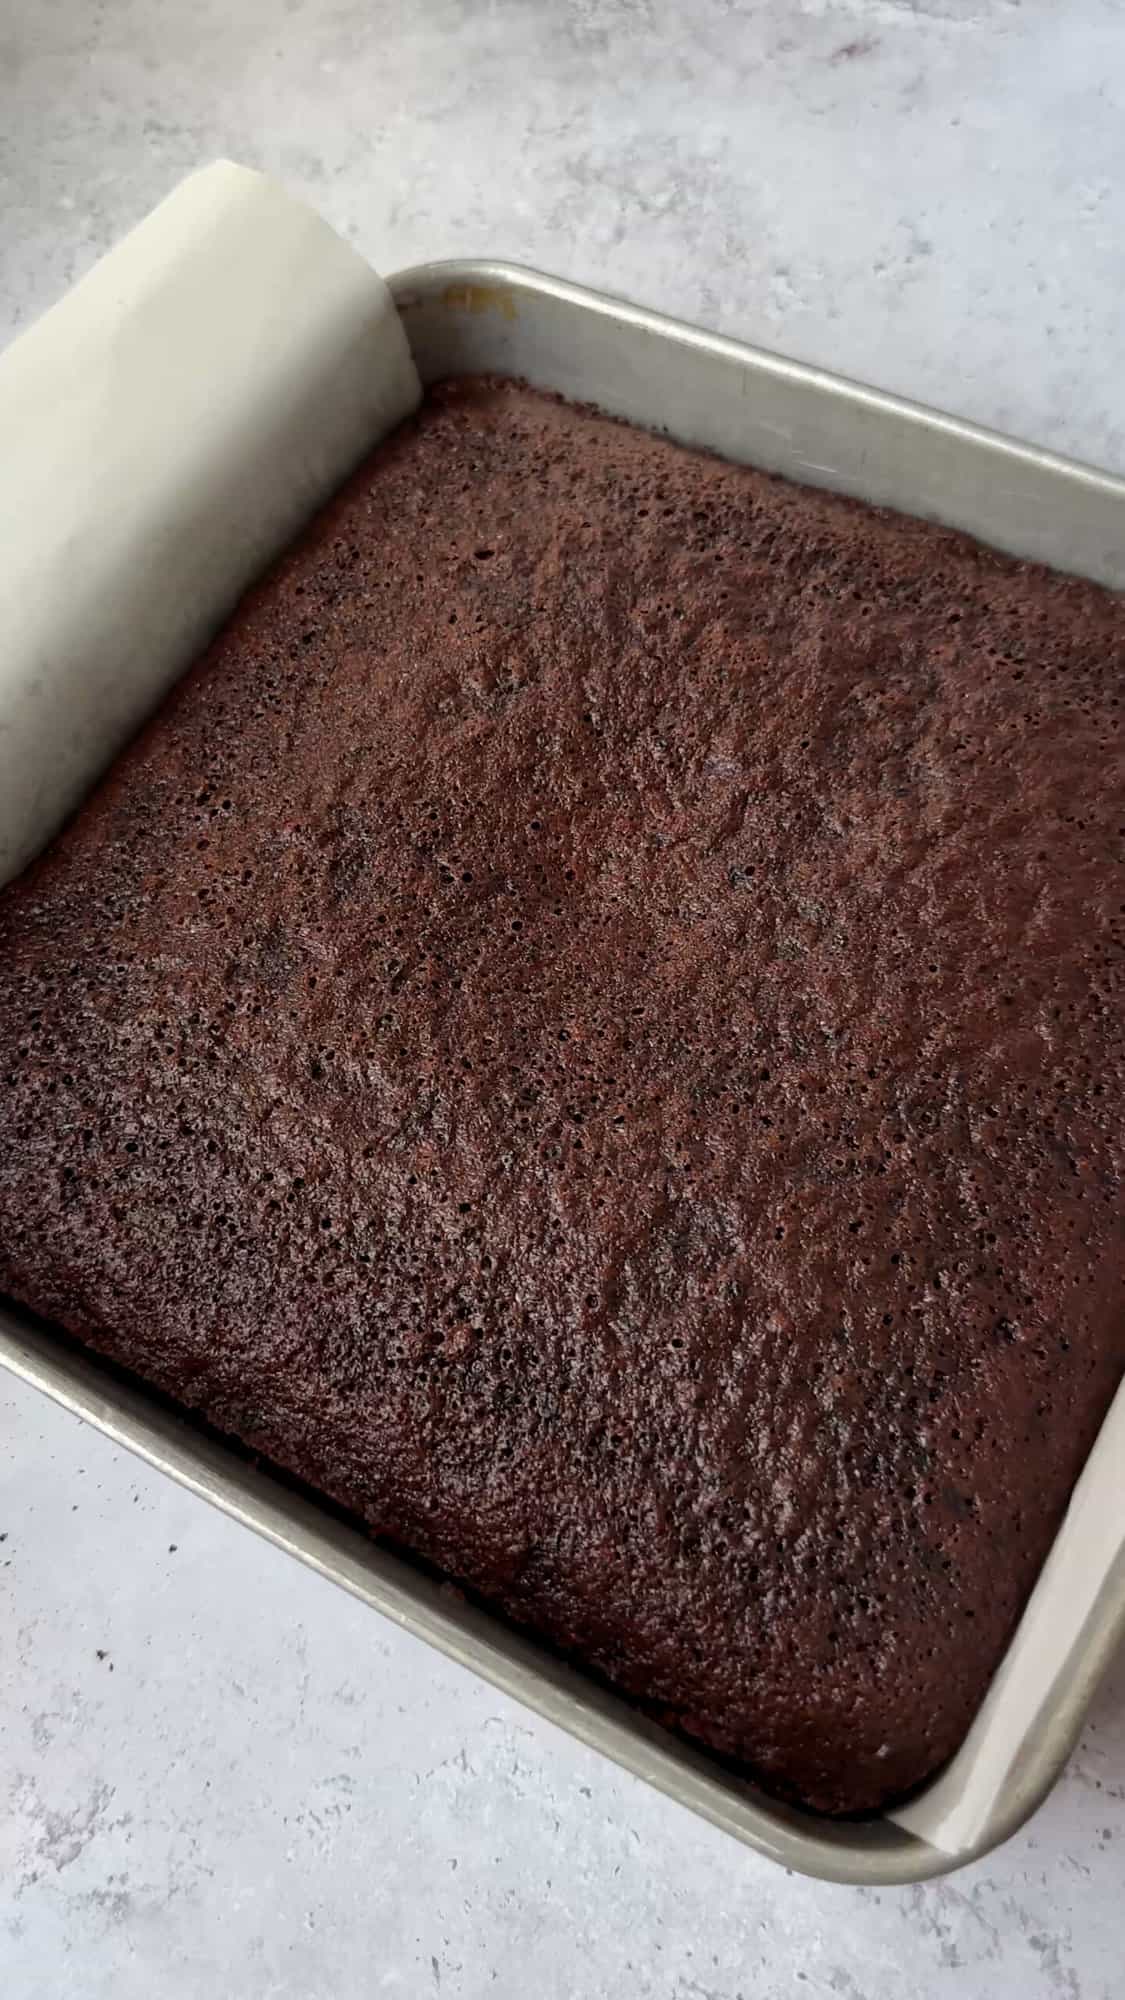 chocolate cake in baking pan.